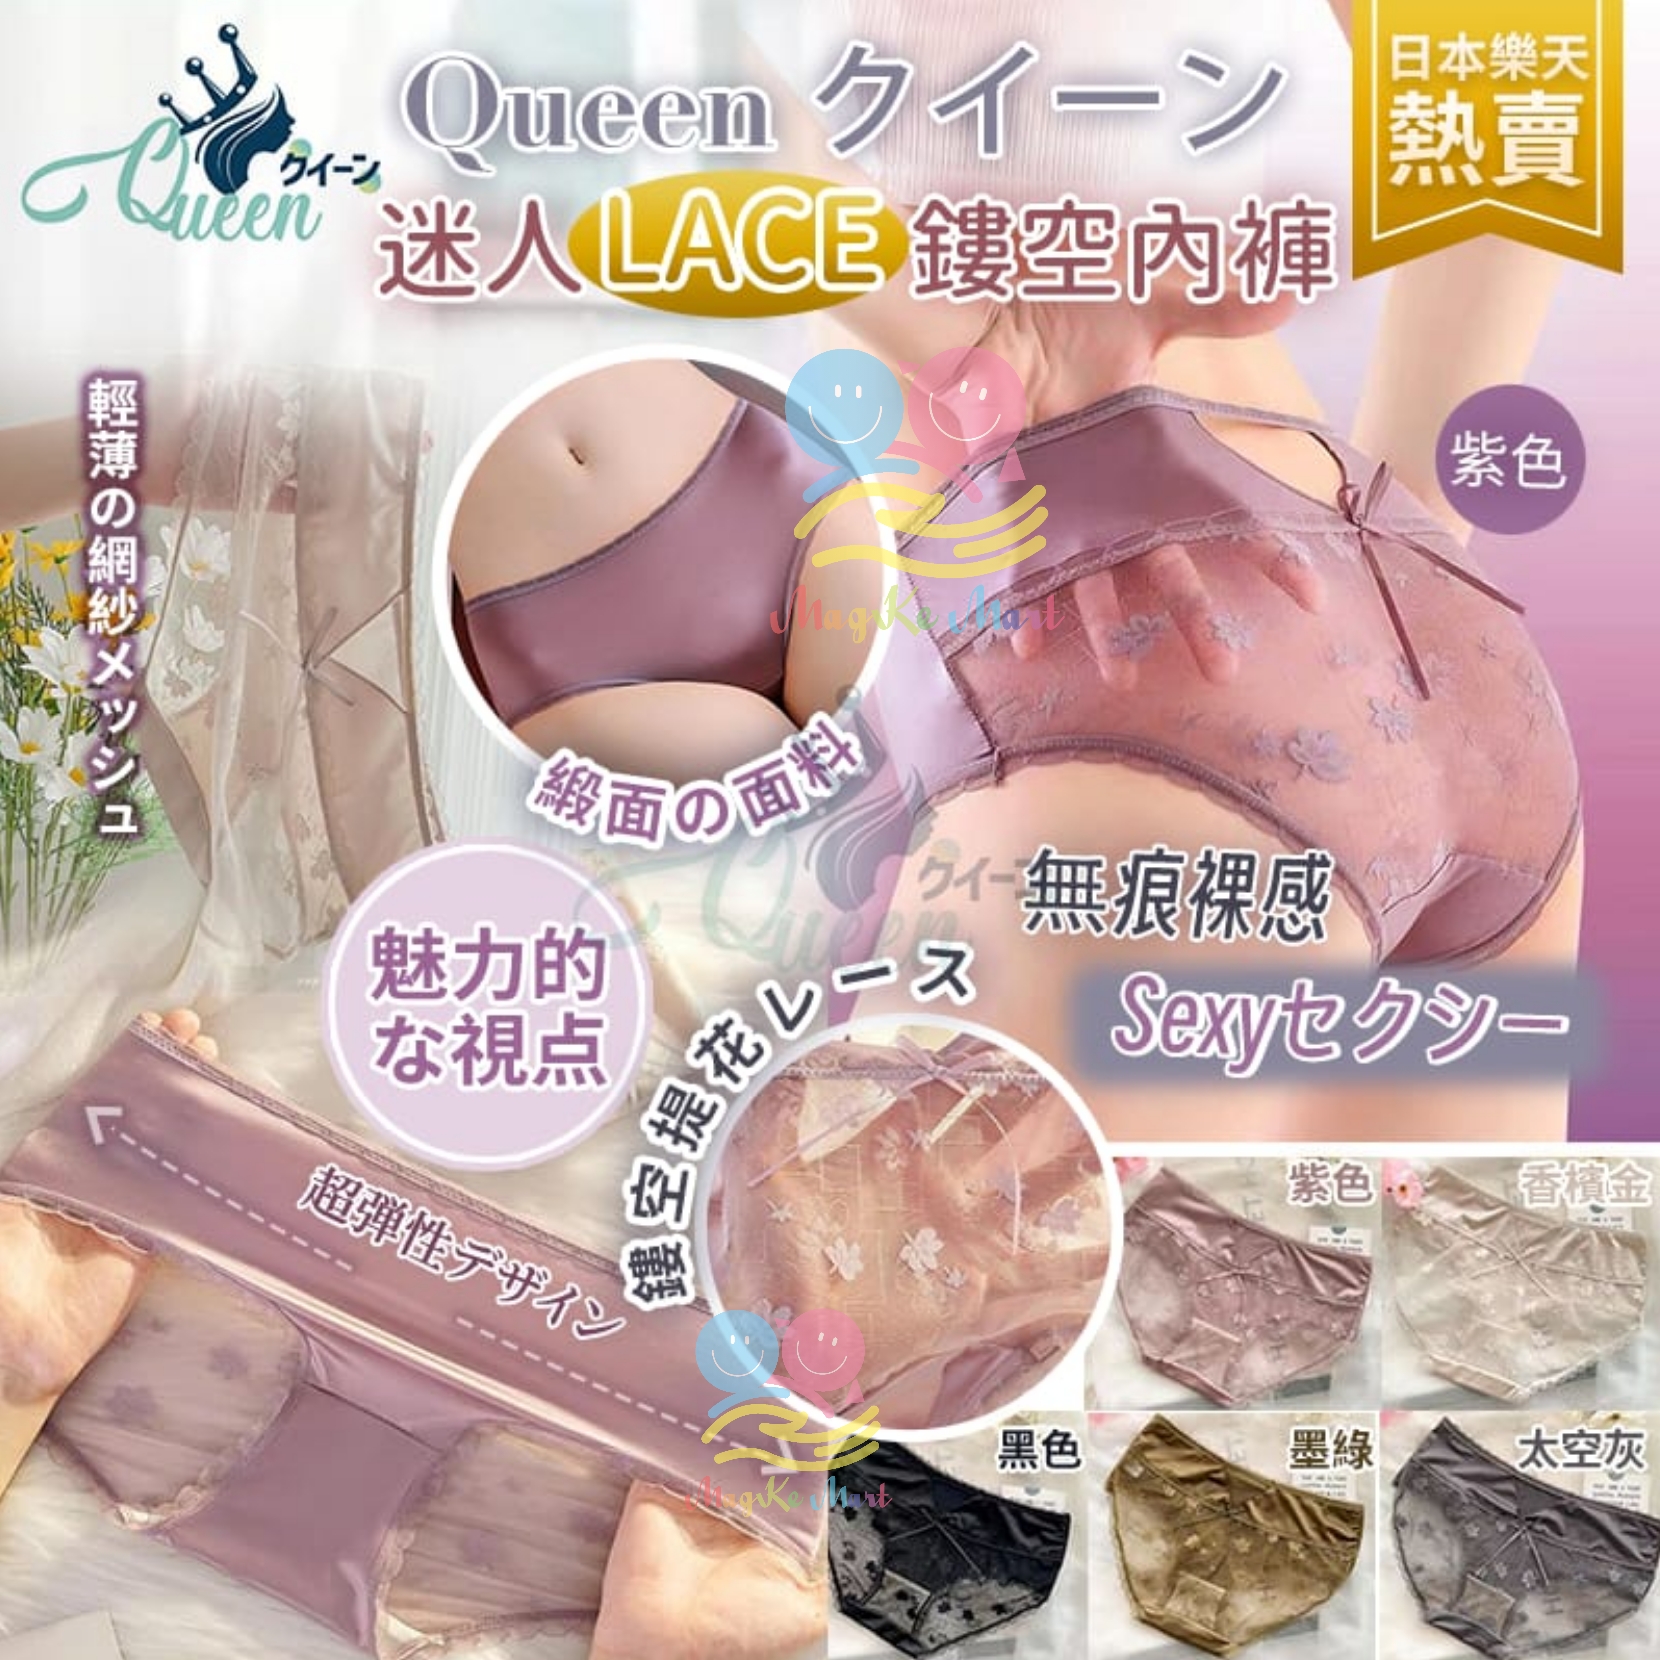 日本樂天熱賣 Queen 迷人LACE鏤空內褲(1套5條)